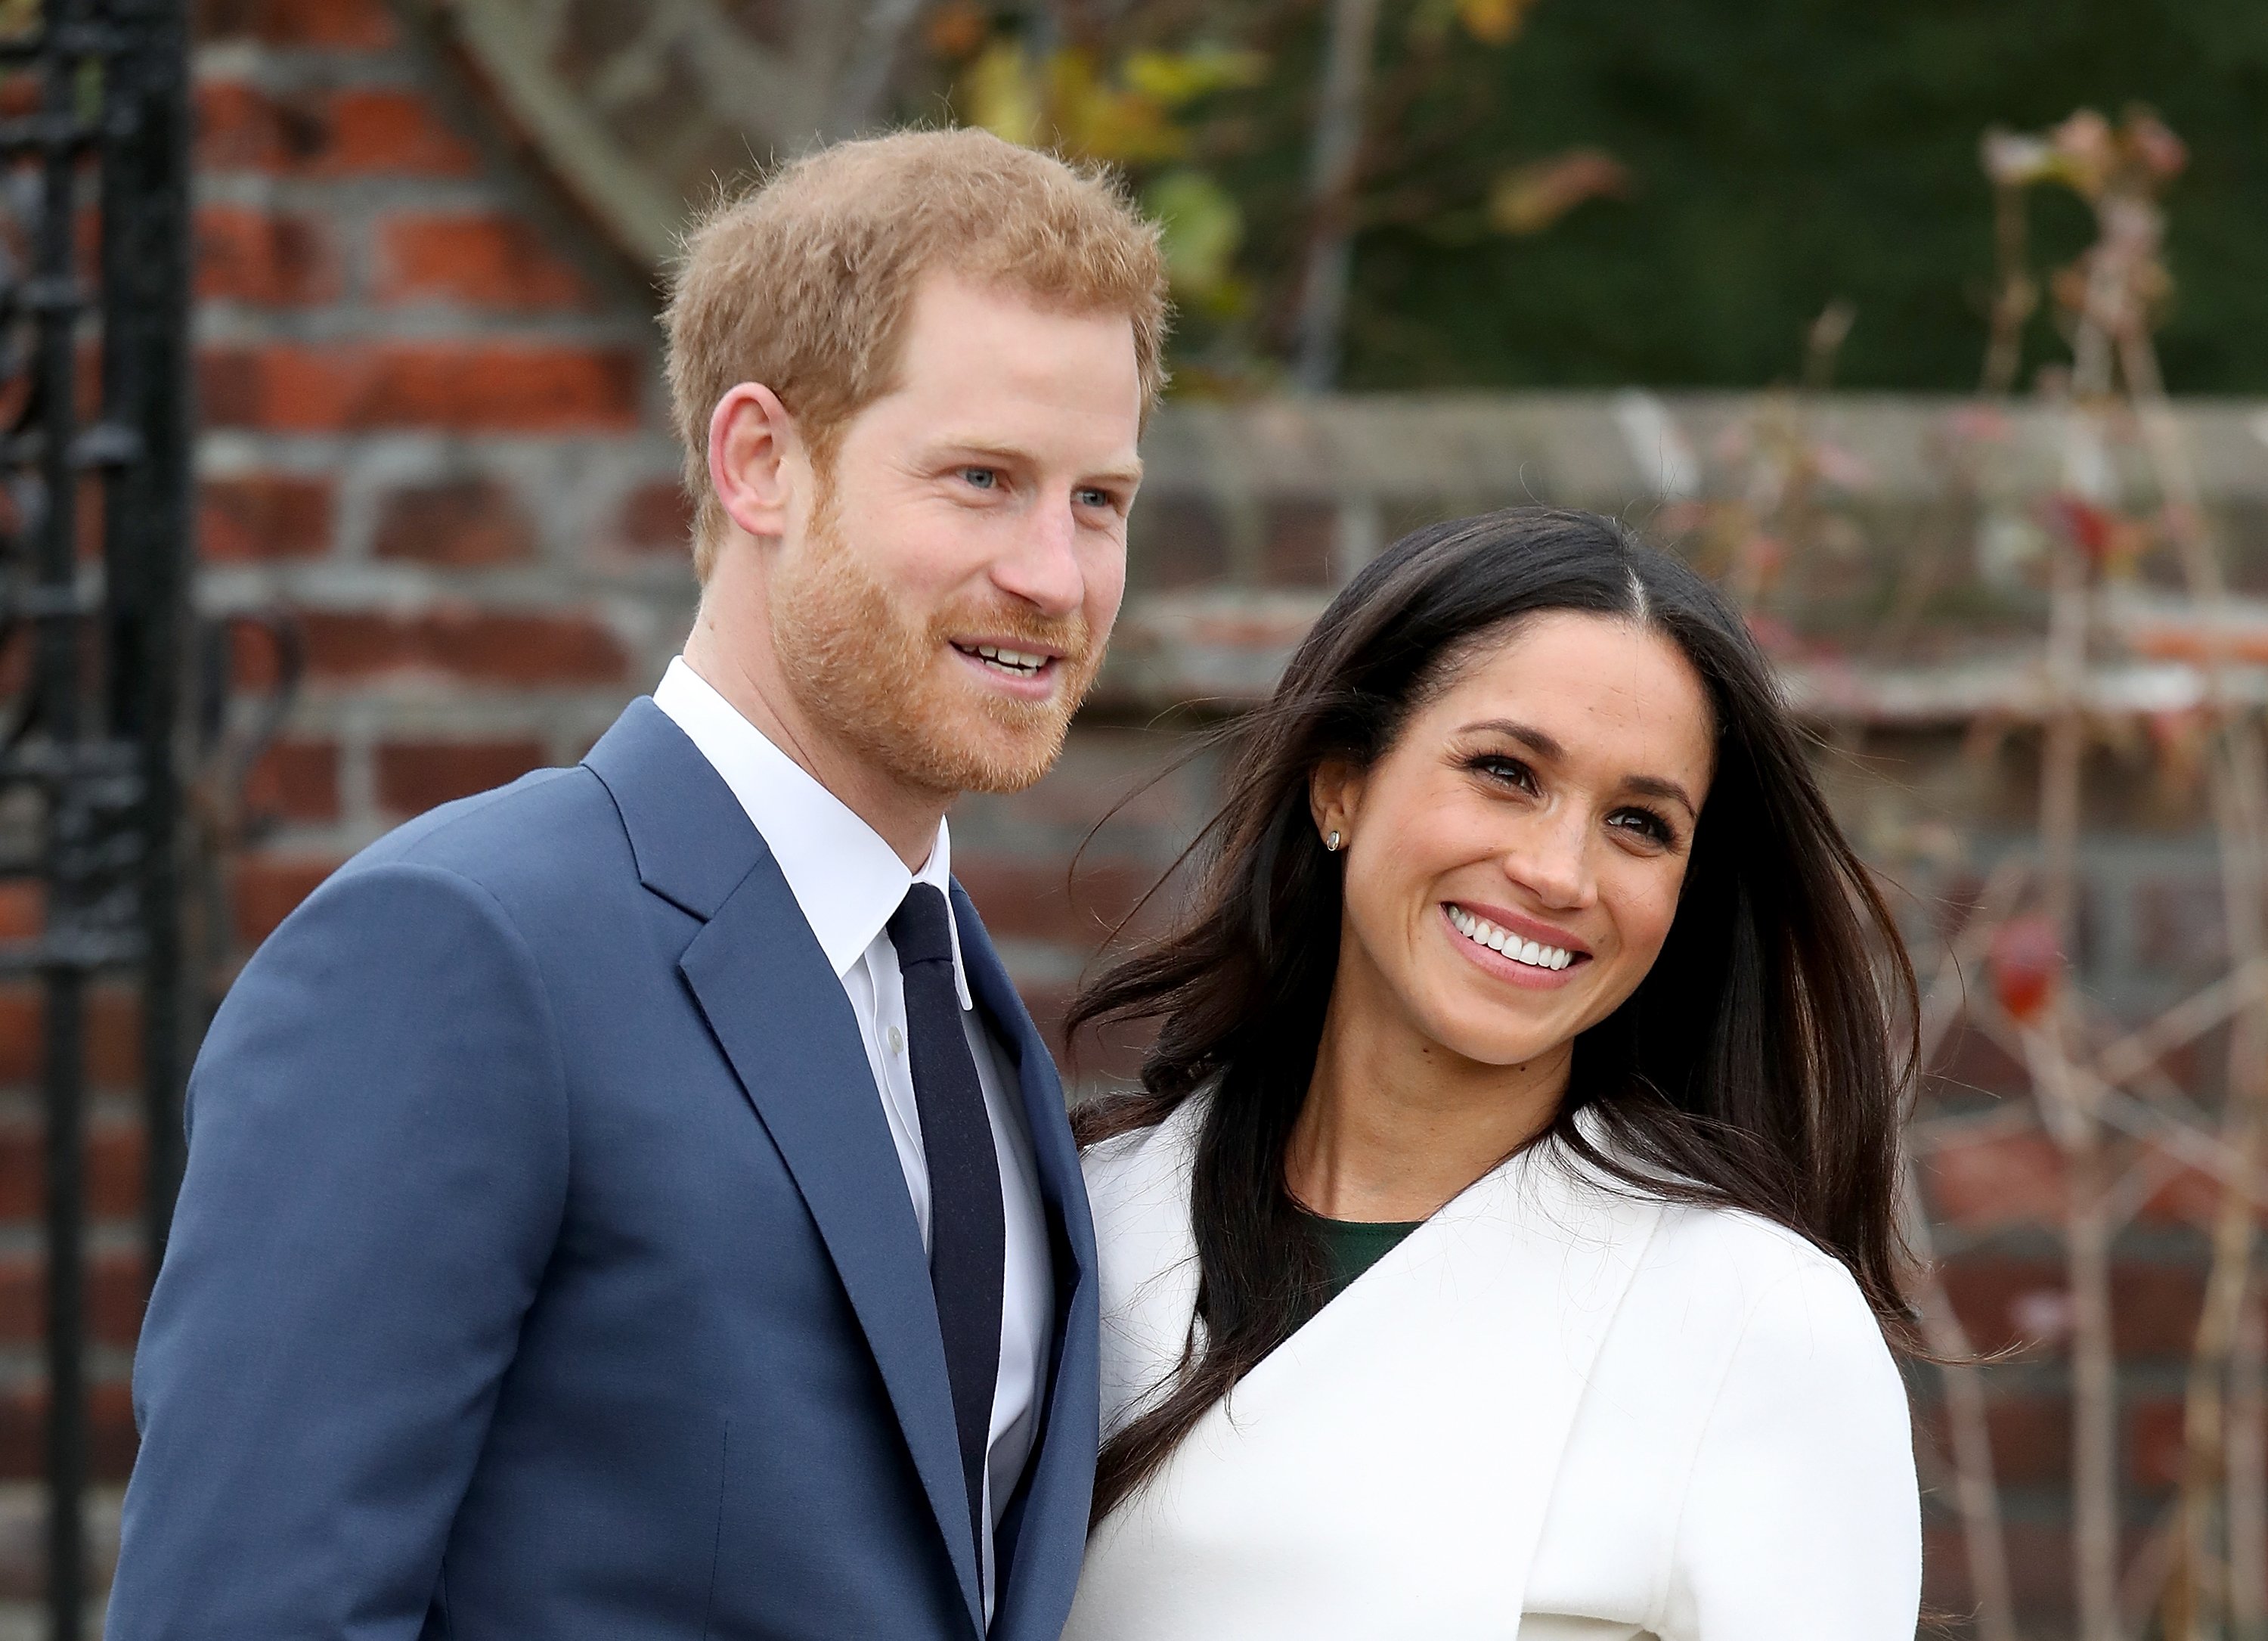 Le prince Harry et l'actrice Meghan Markle lors d'un photocall officiel pour annoncer leurs fiançailles à The Sunken Gardens au palais de Kensington le 27 novembre 2017 à Londres, en Angleterre | Source : Getty Images